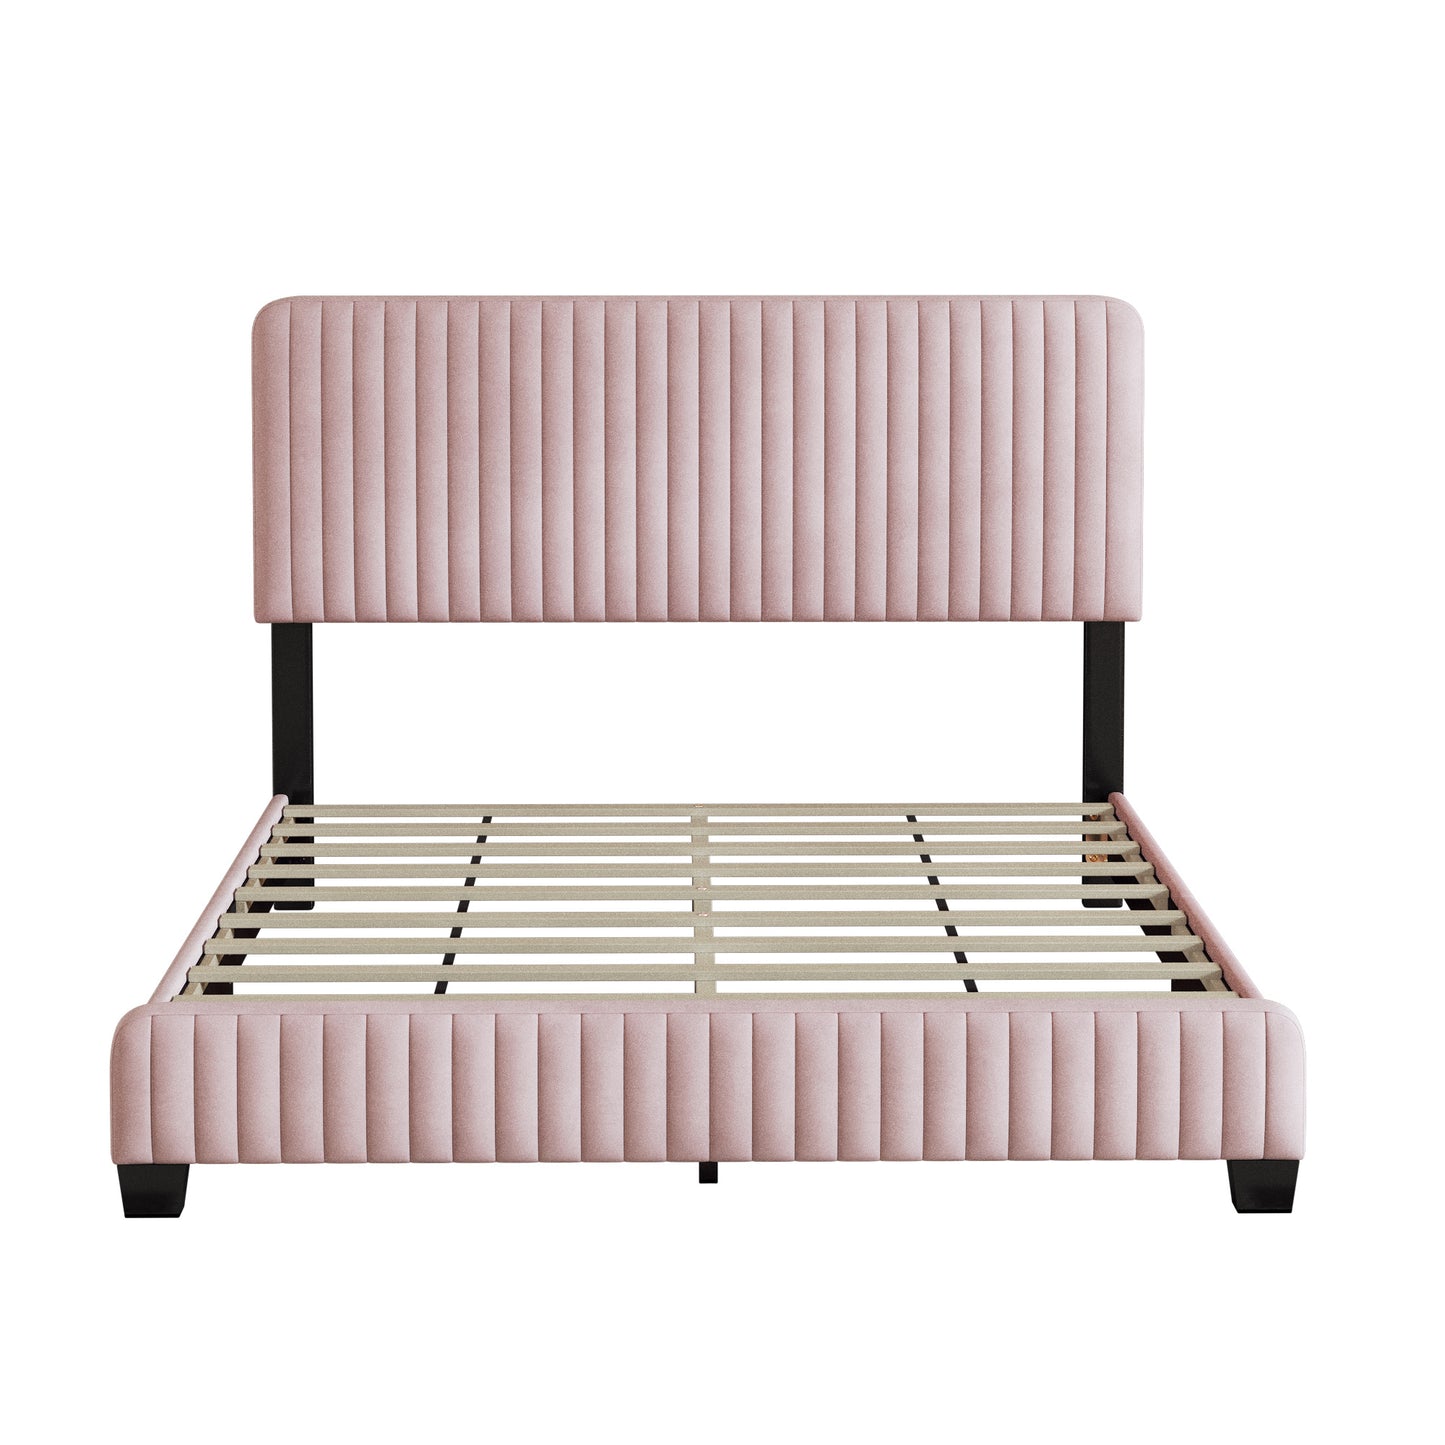 emily upholstered platform bed, pink